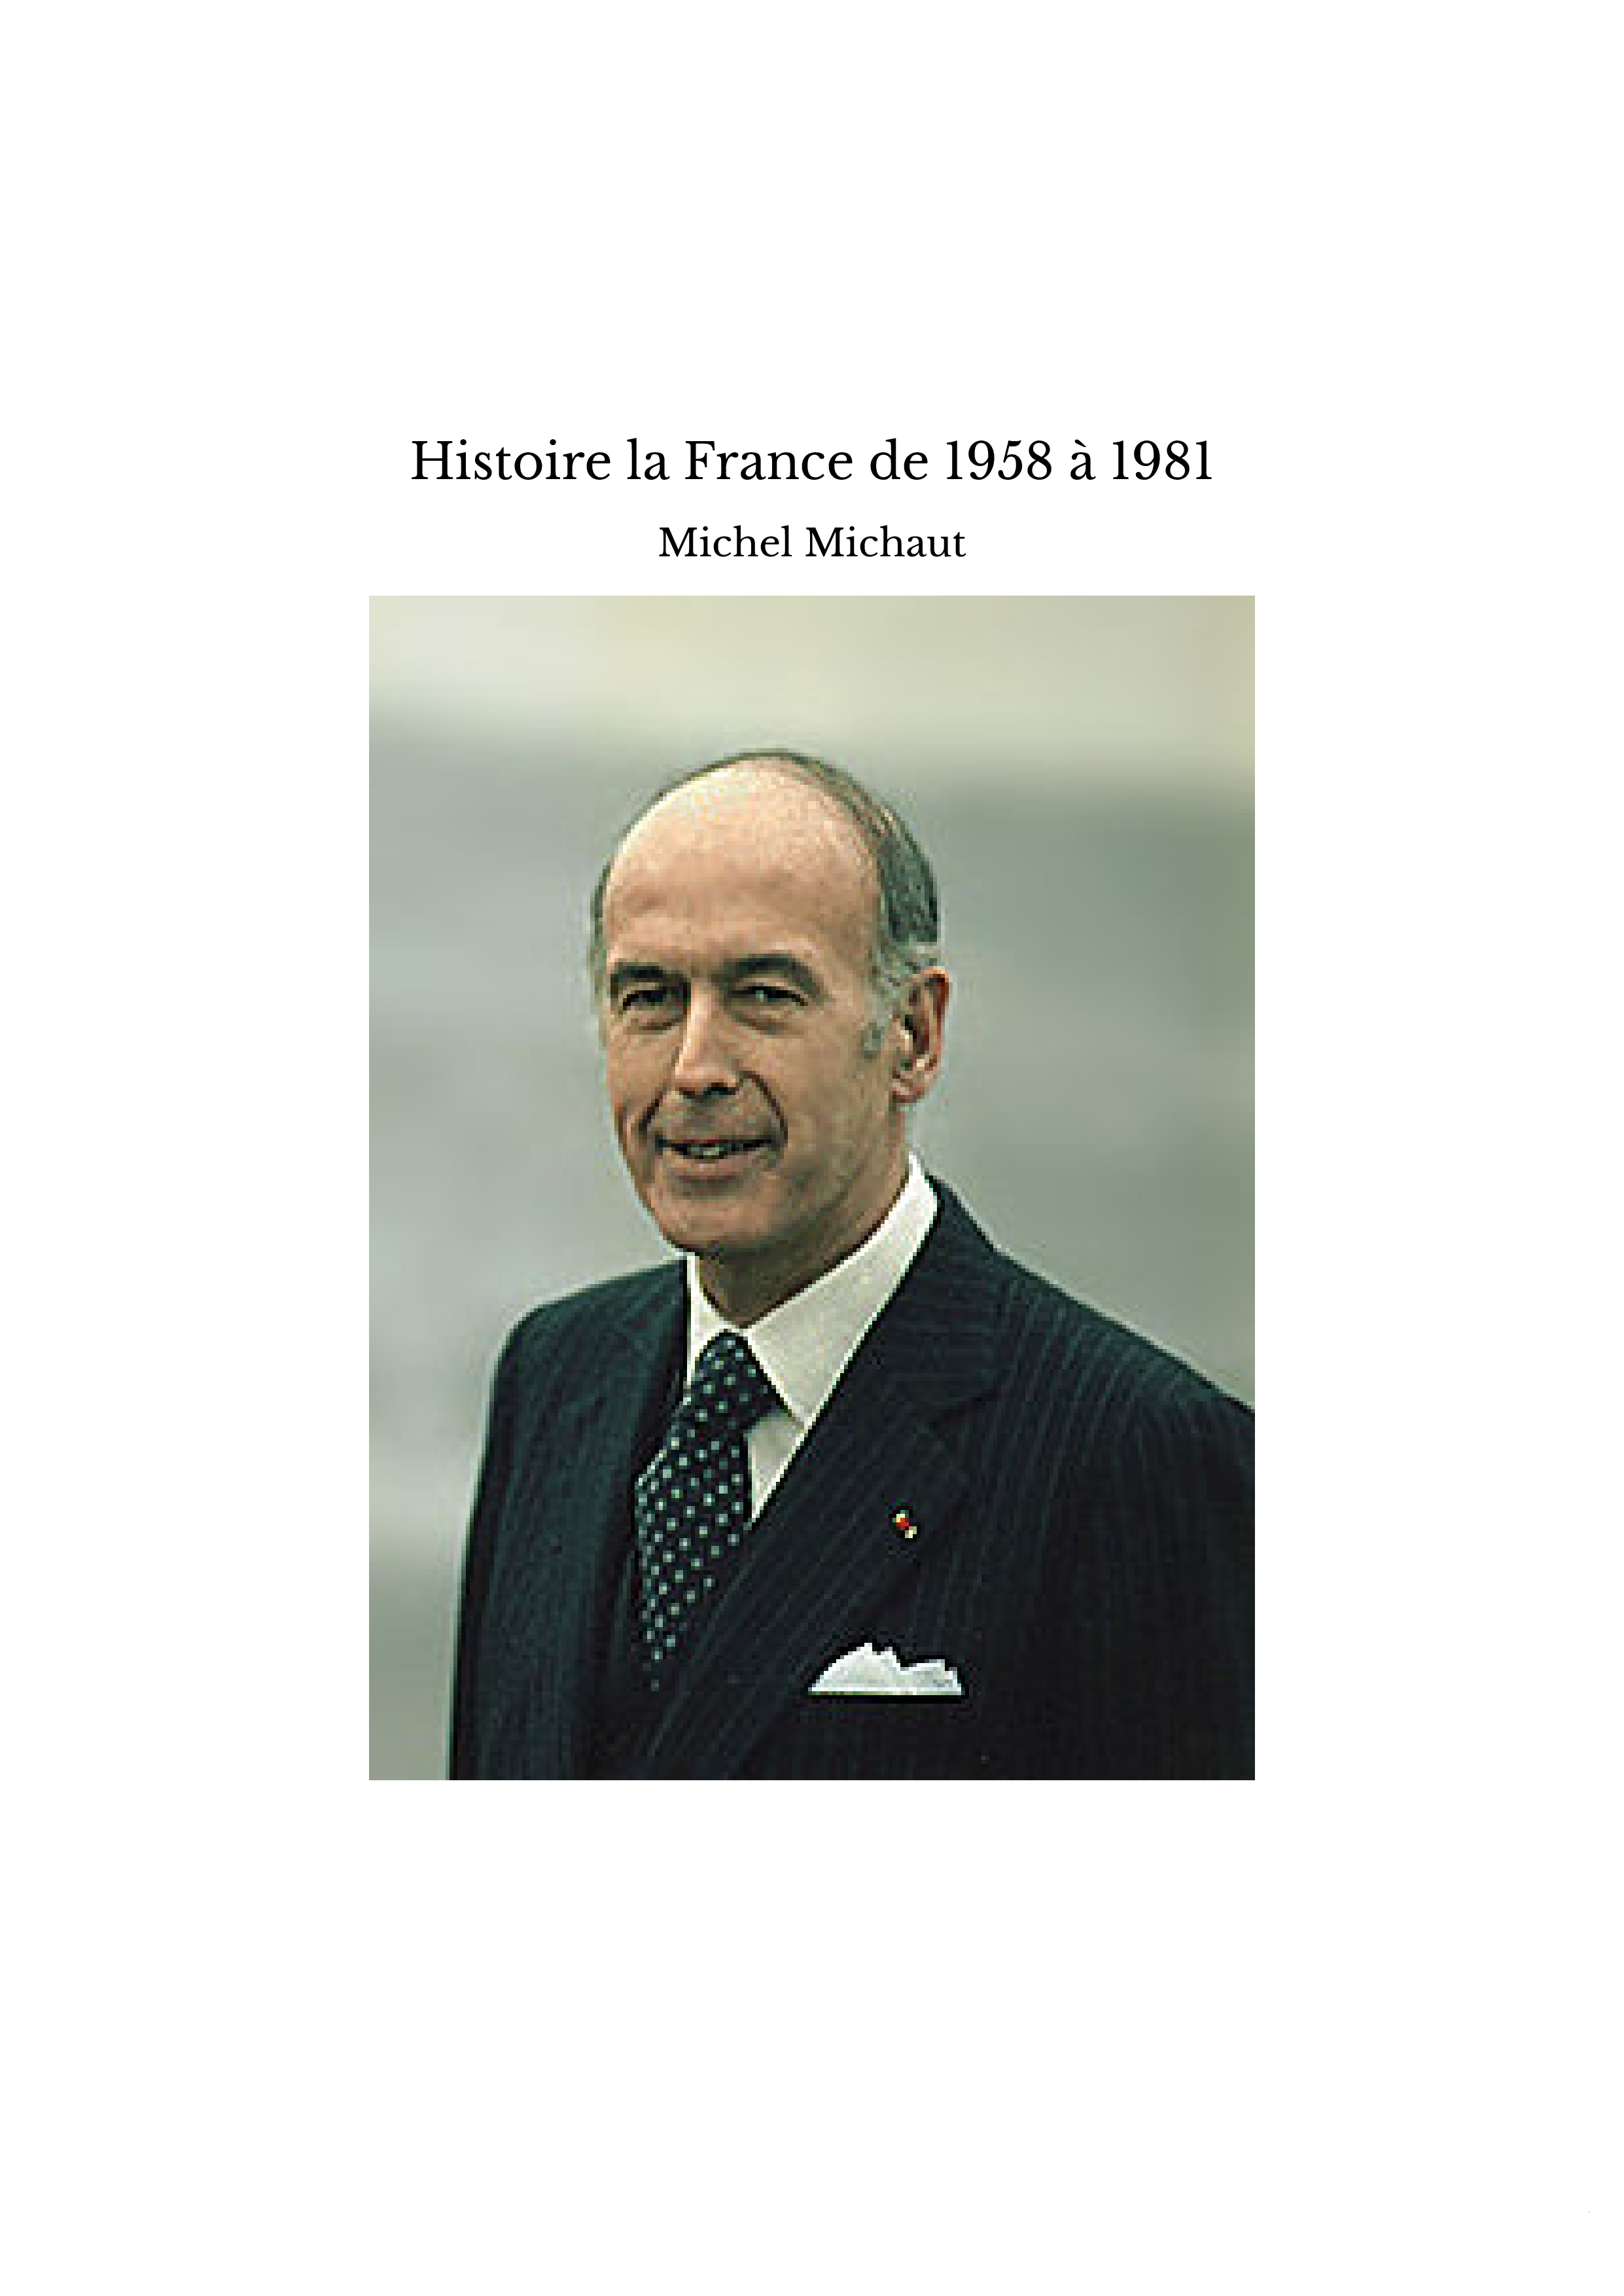 Histoire la France de 1958 à 1981